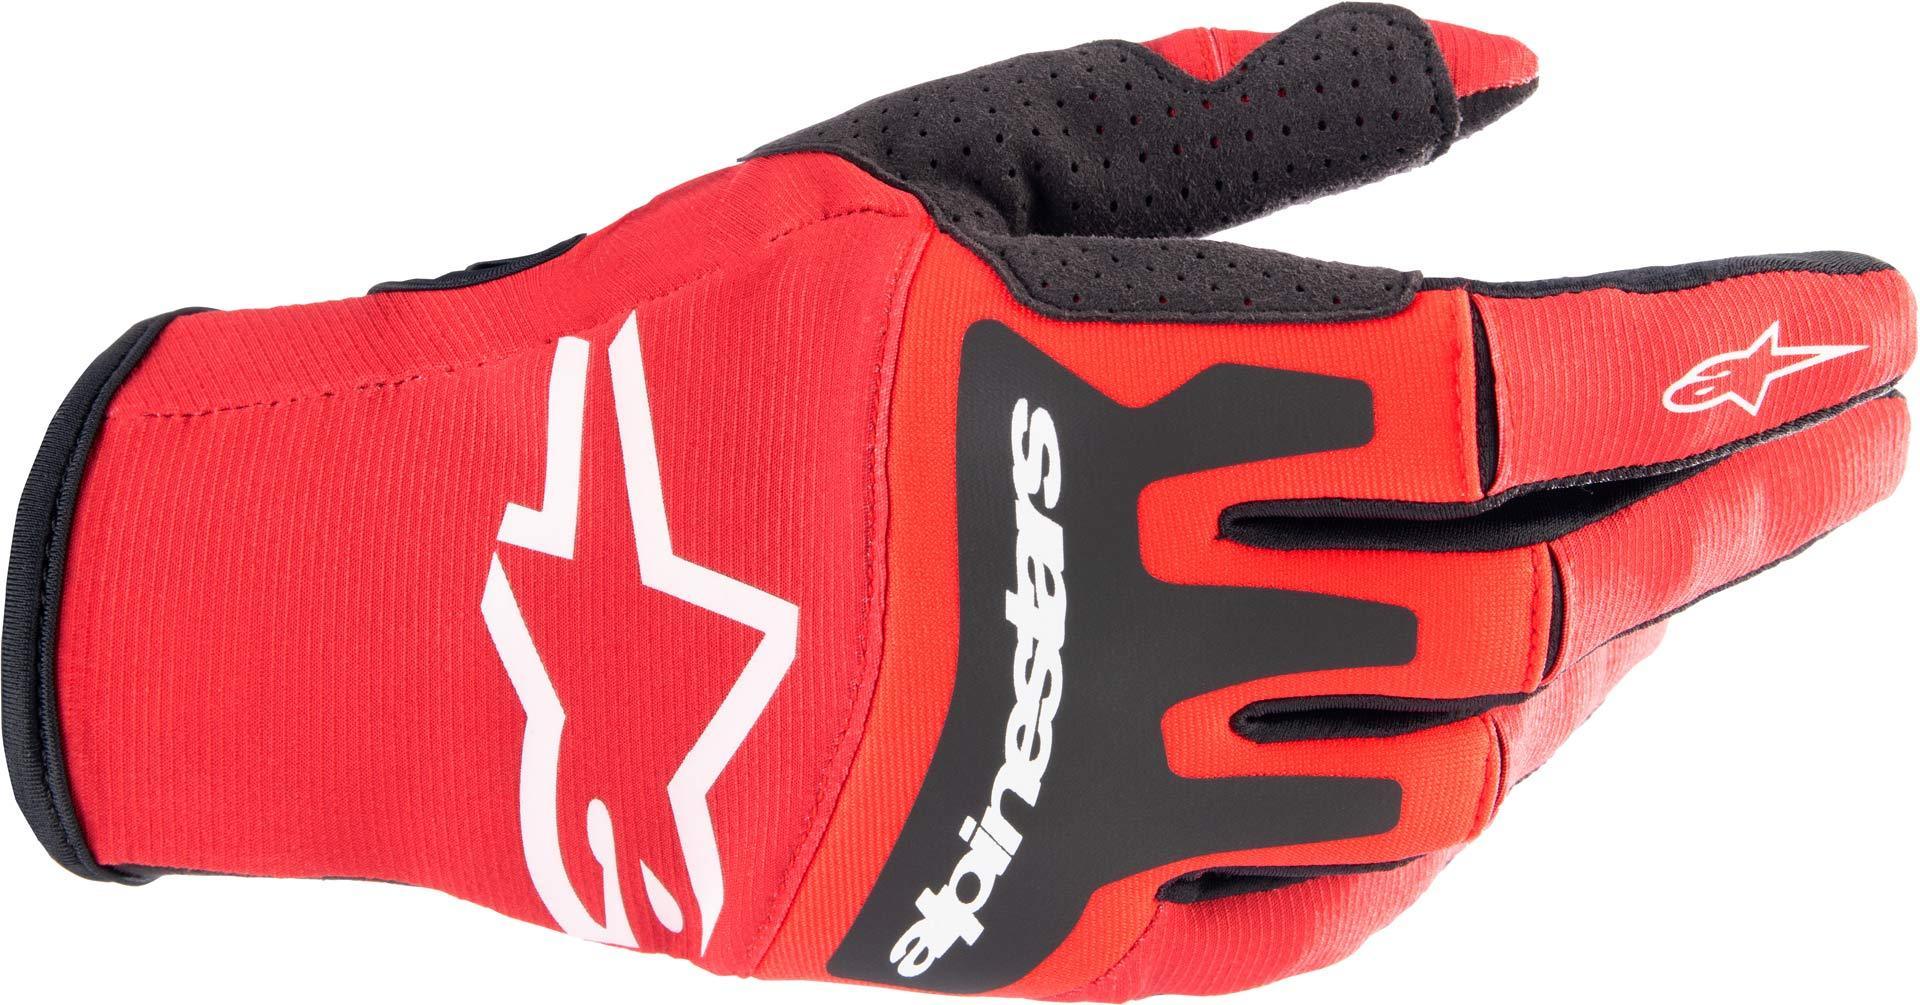 Перчатки для мотокросса Alpinestars Techstar, черный/красный перчатки для мма boybo wings цвет черный красный размер s 7743474